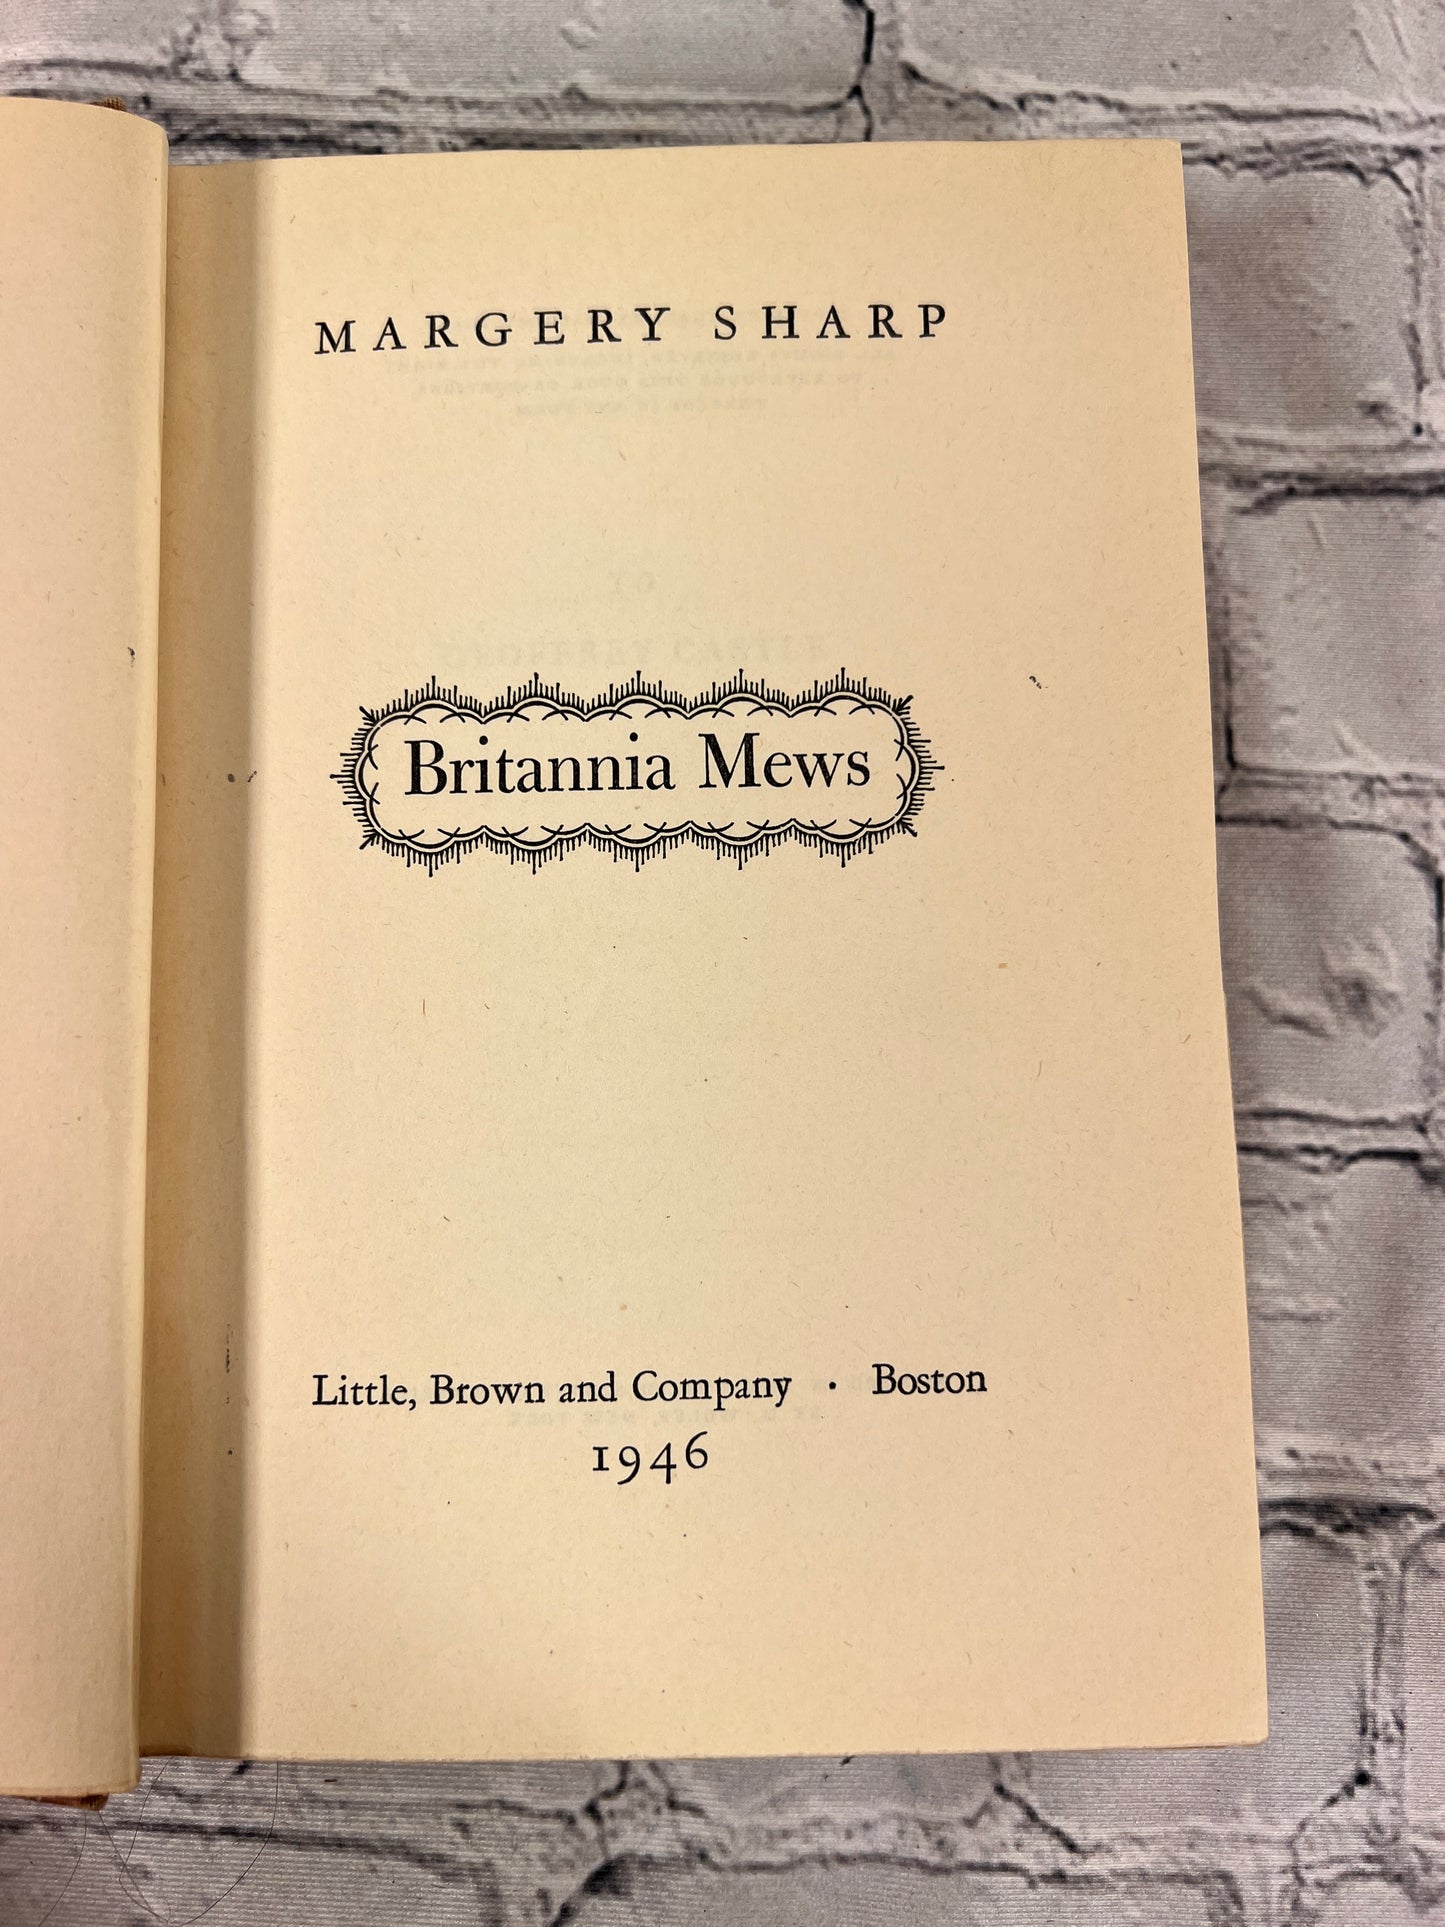 Britannia Mews by Margery Sharp [1946]